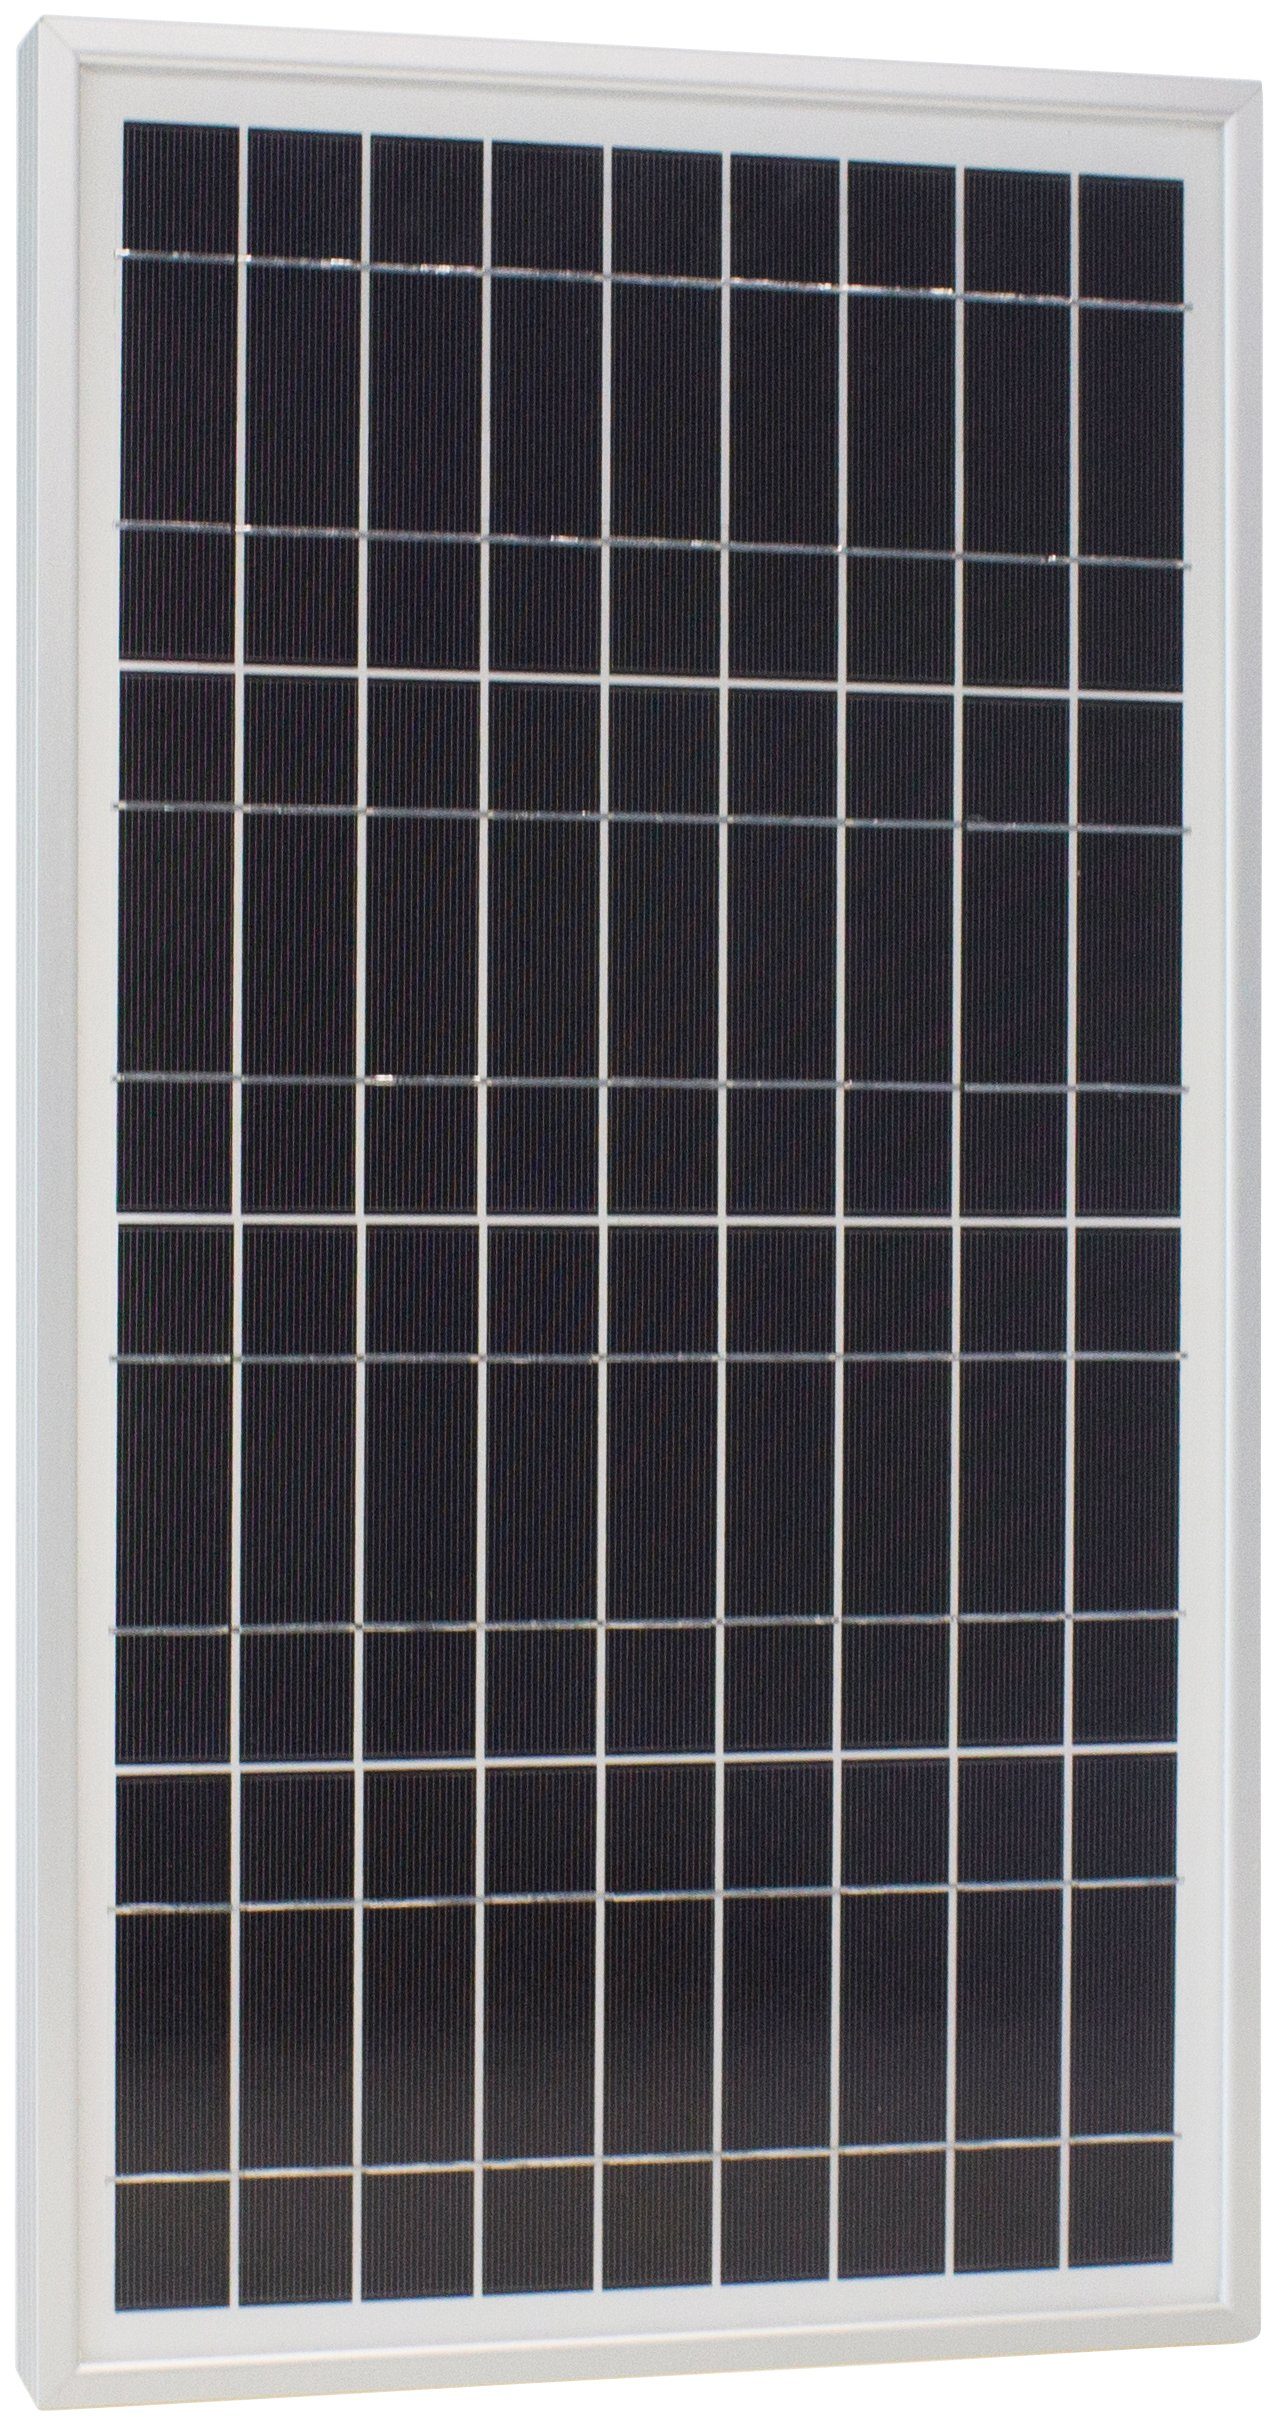 Phaesun Solarmodul Sun Plus 20 S, 20 W, 12 VDC, IP65 Schutz